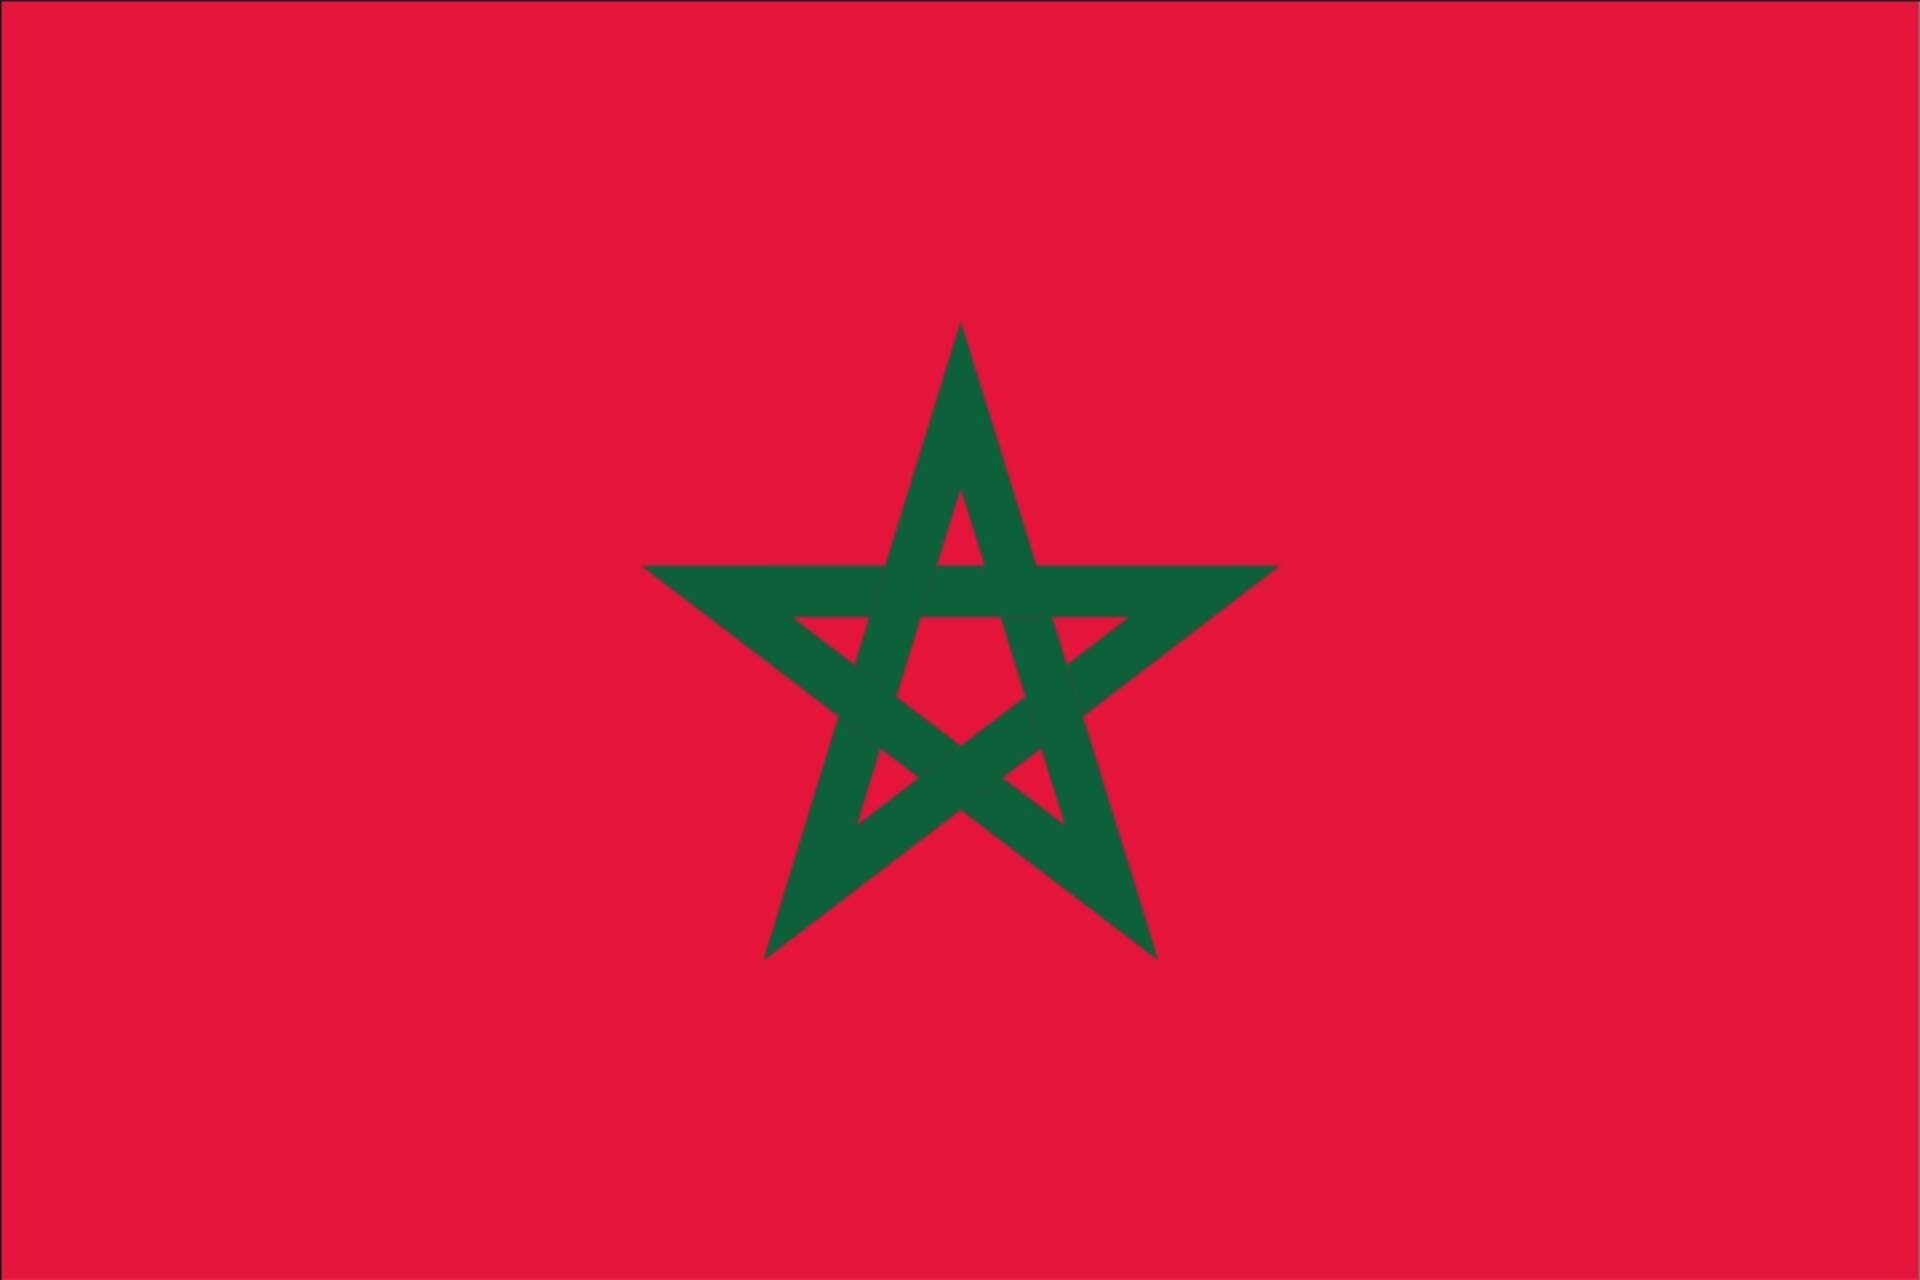 g/m² 80 Flagge Marokko flaggenmeer